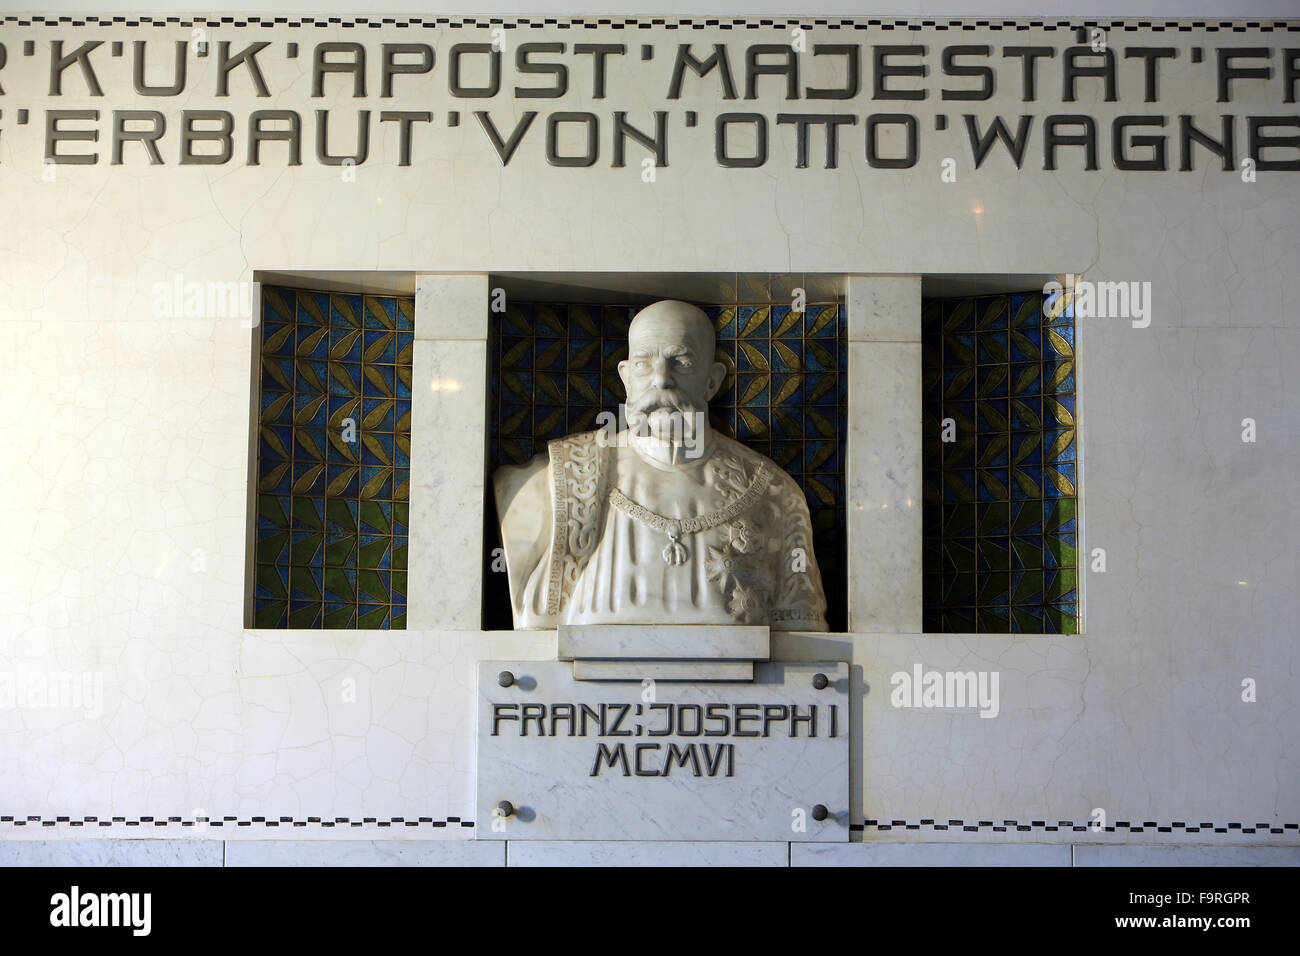 Franz Joseph I. Ufficio Postale Savings Bank Building da Otto Wagner. Foto Stock